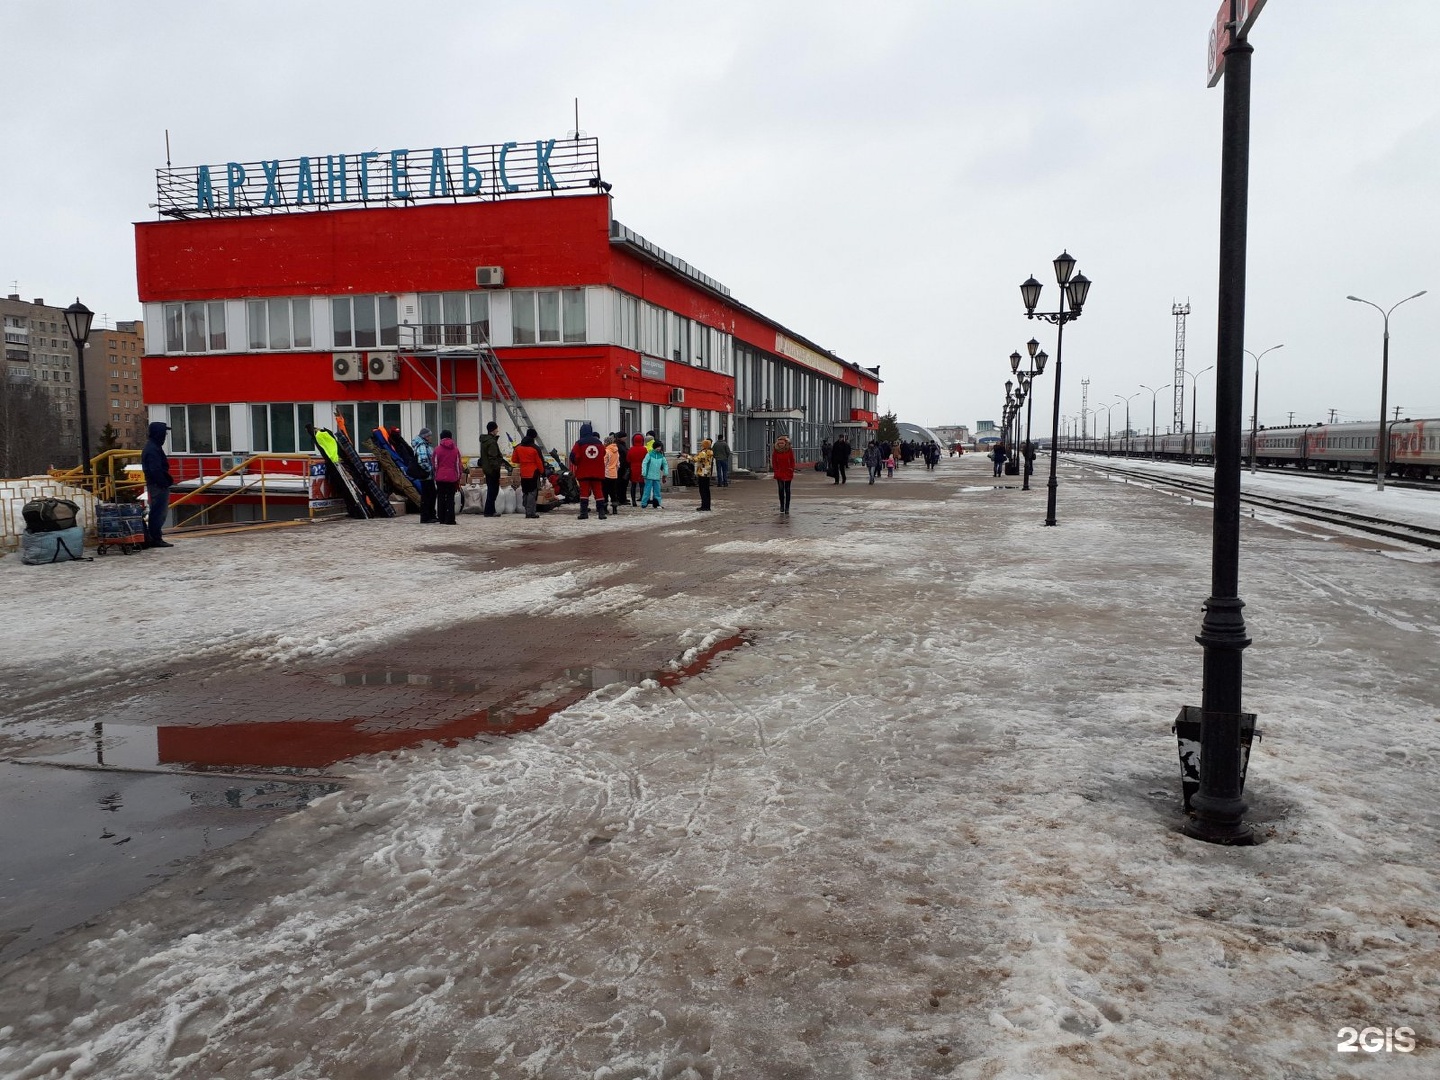 Северодвинск жд вокзал